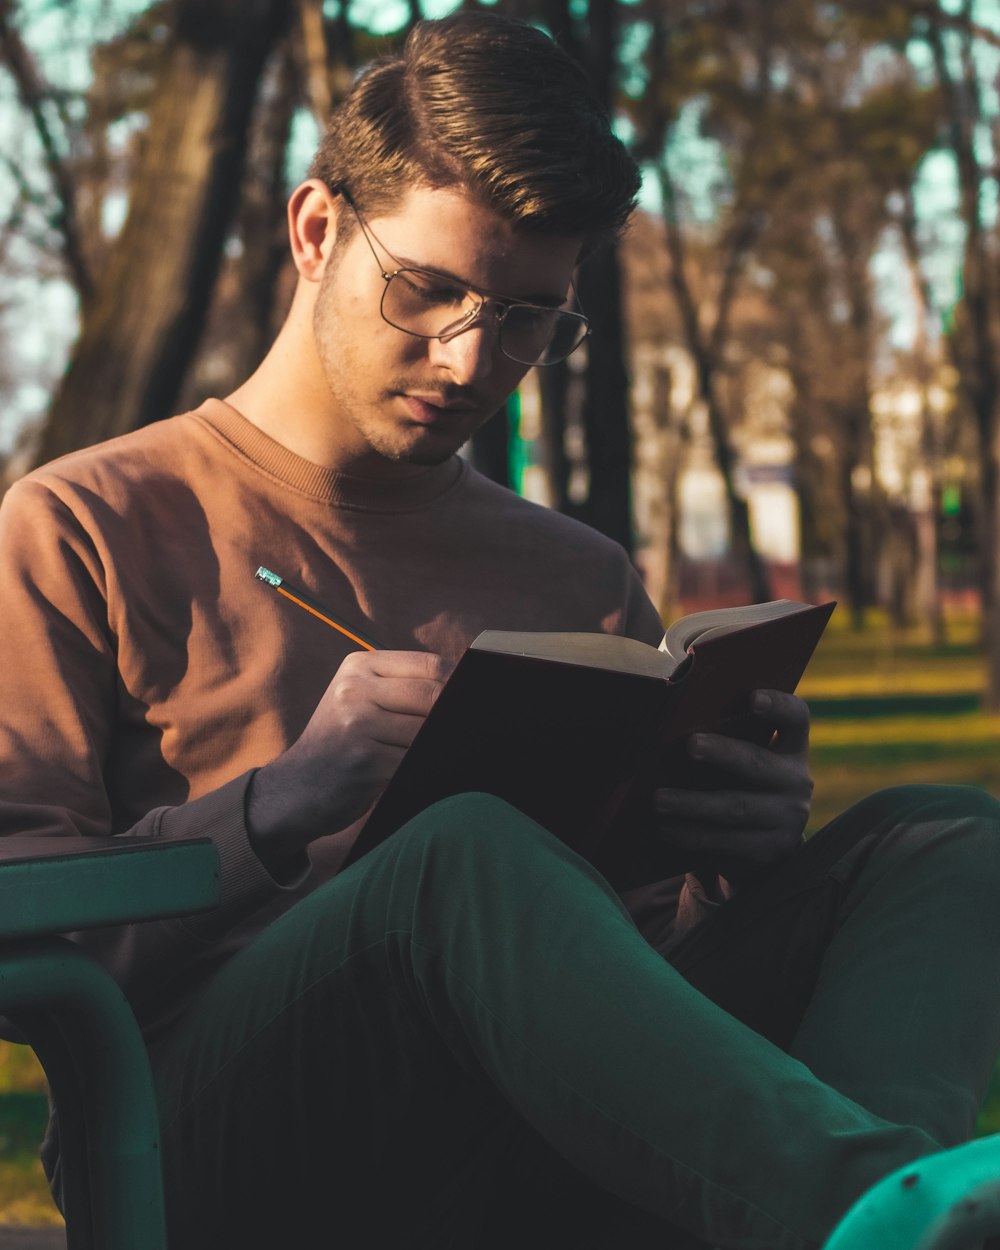 갈색 긴 소매 셔츠를 입은 남자가 녹색 플라스틱 의자에 앉아 책을 읽고 있다